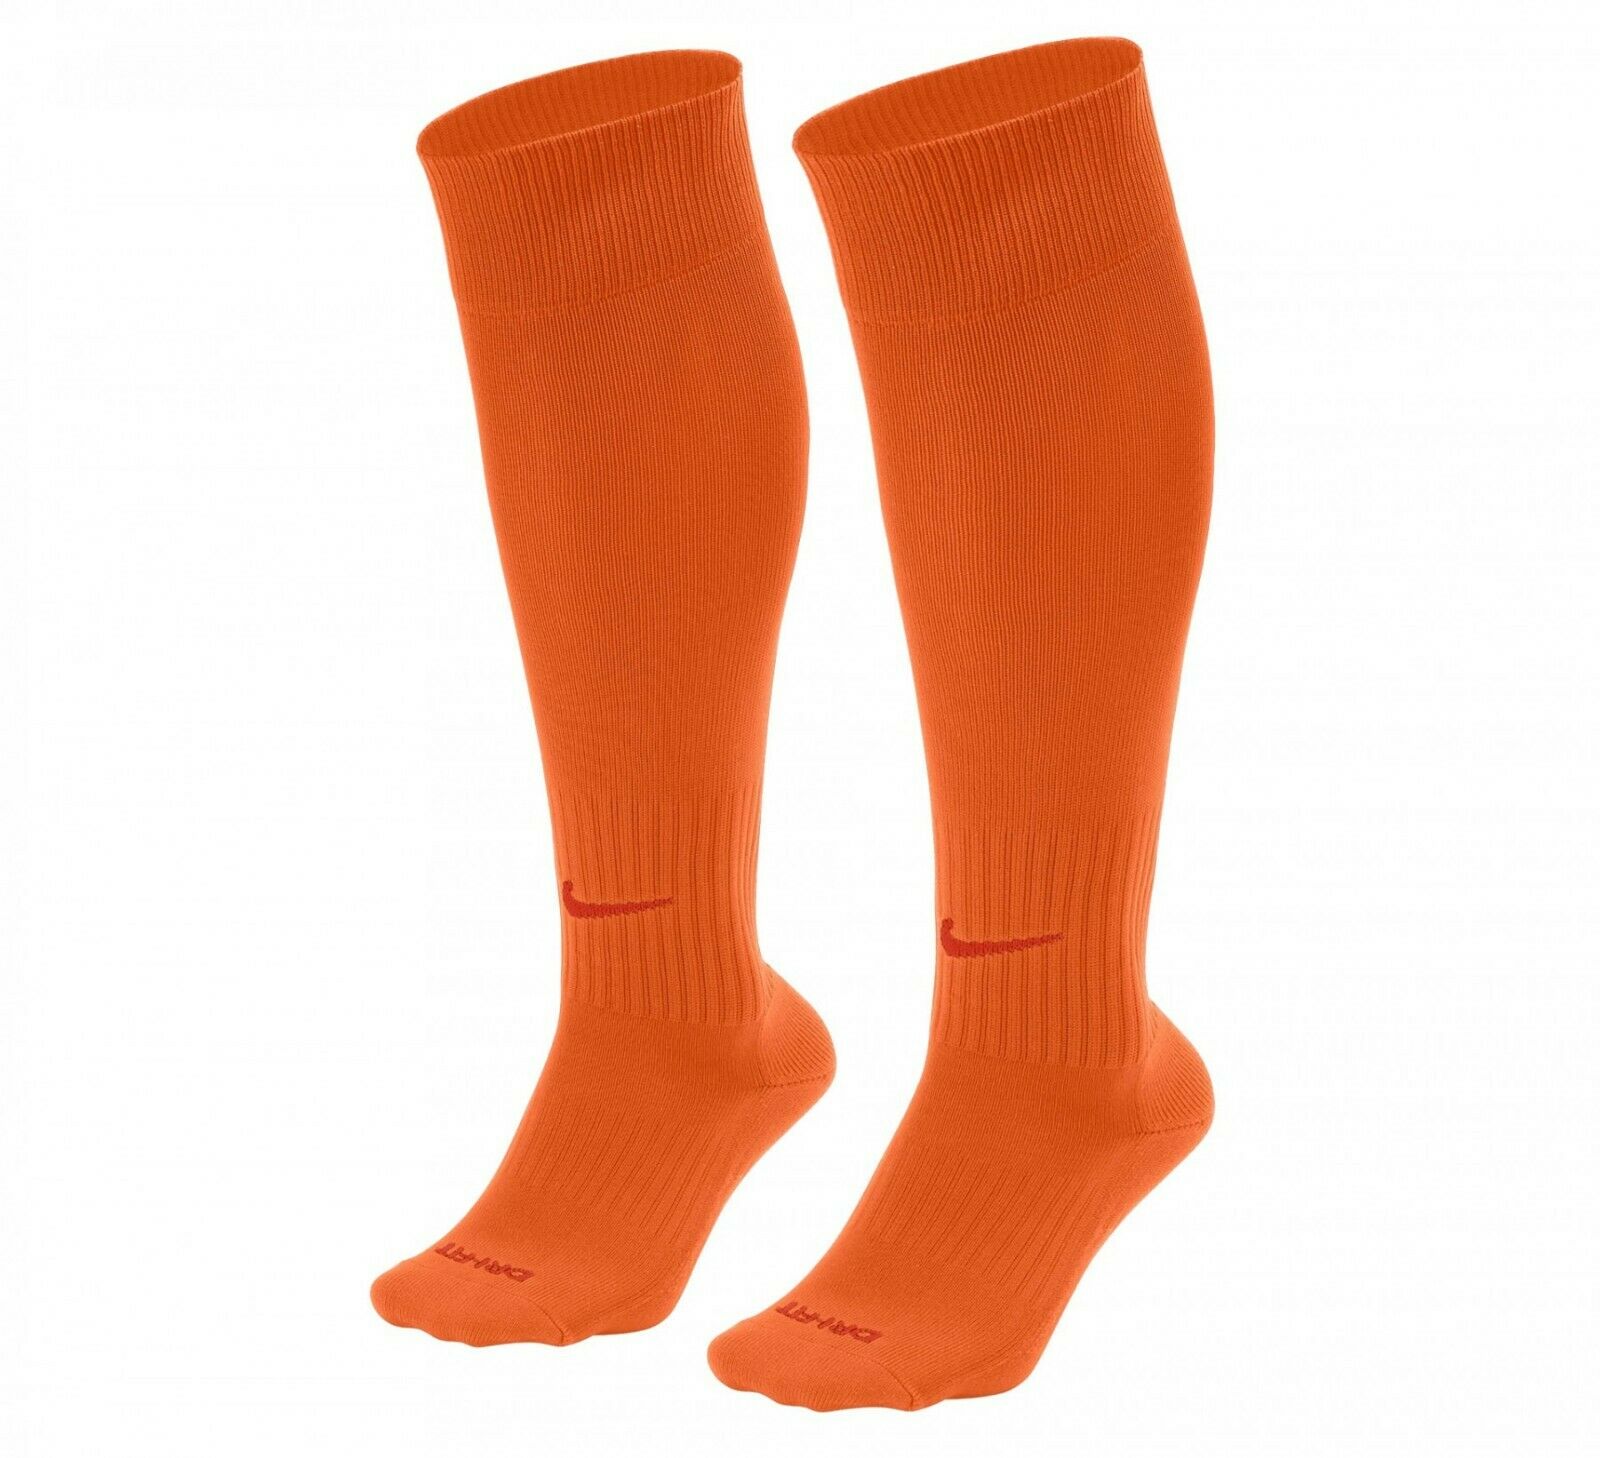 Nike Classic II Cushioned Knee High Socks - Safety Orange